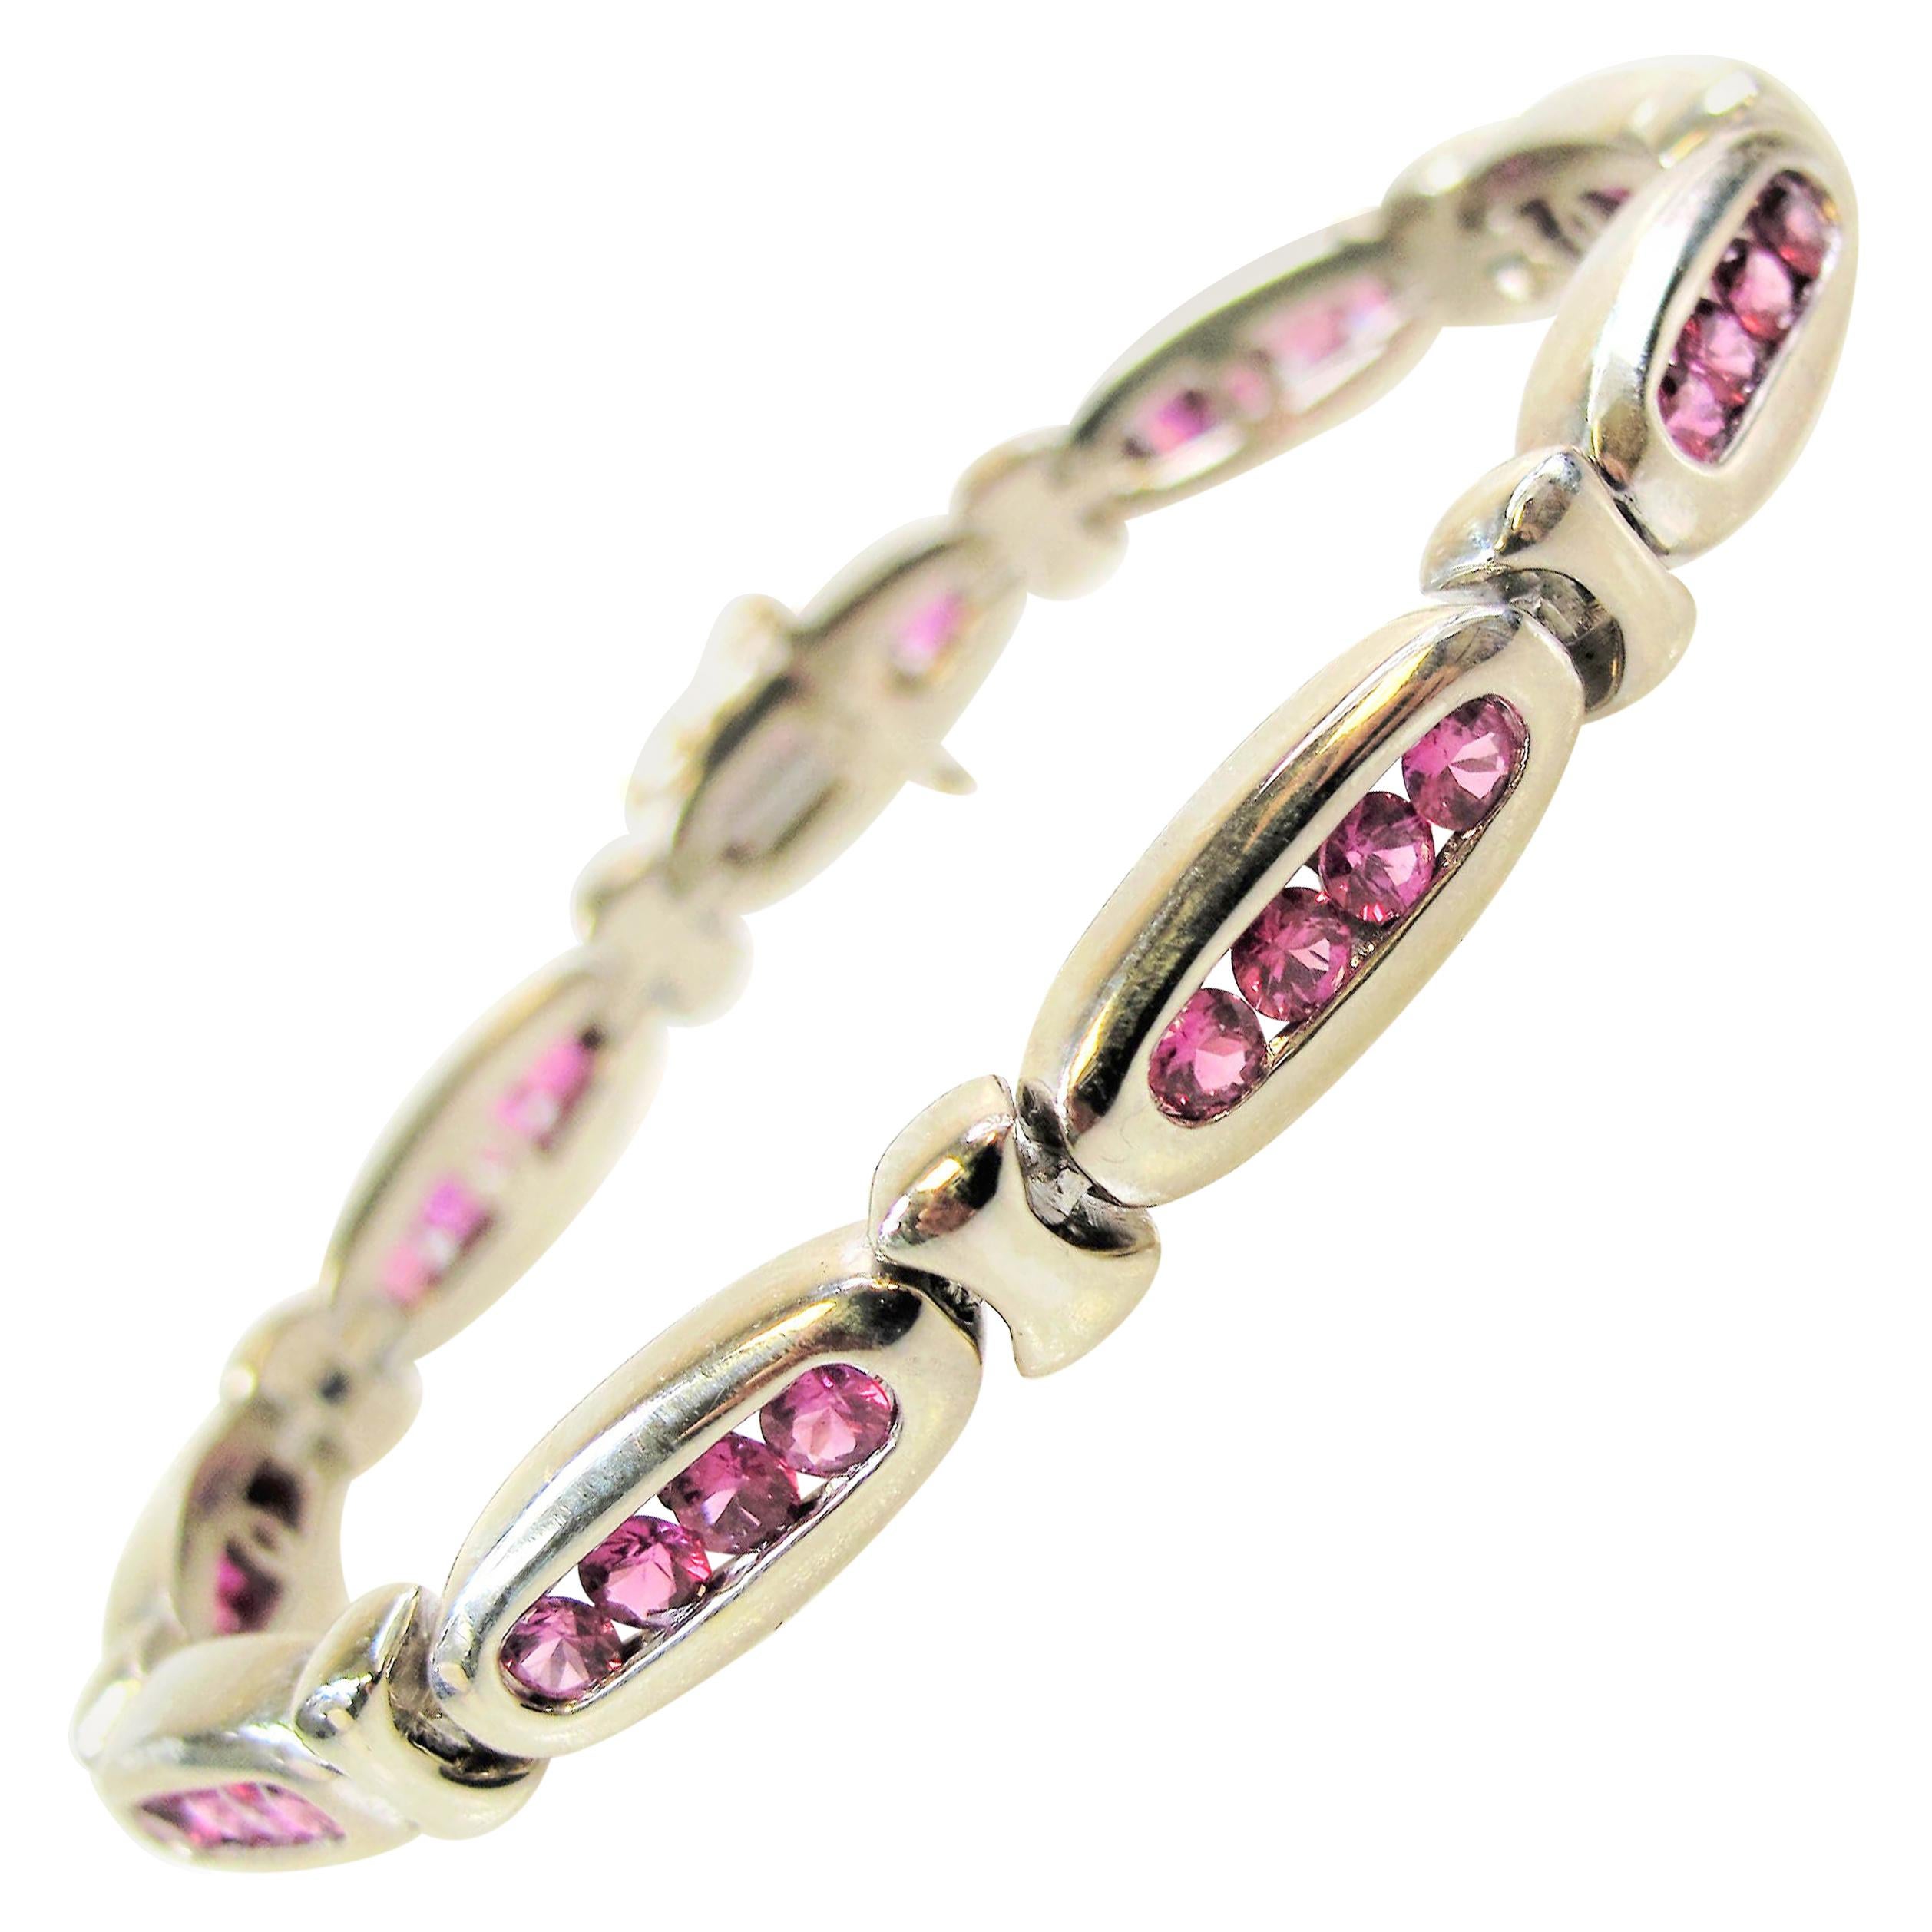 Natural Pink Ruby Oval Link Bracelet in 14 Karat White Gold 5.00 Carats Total For Sale